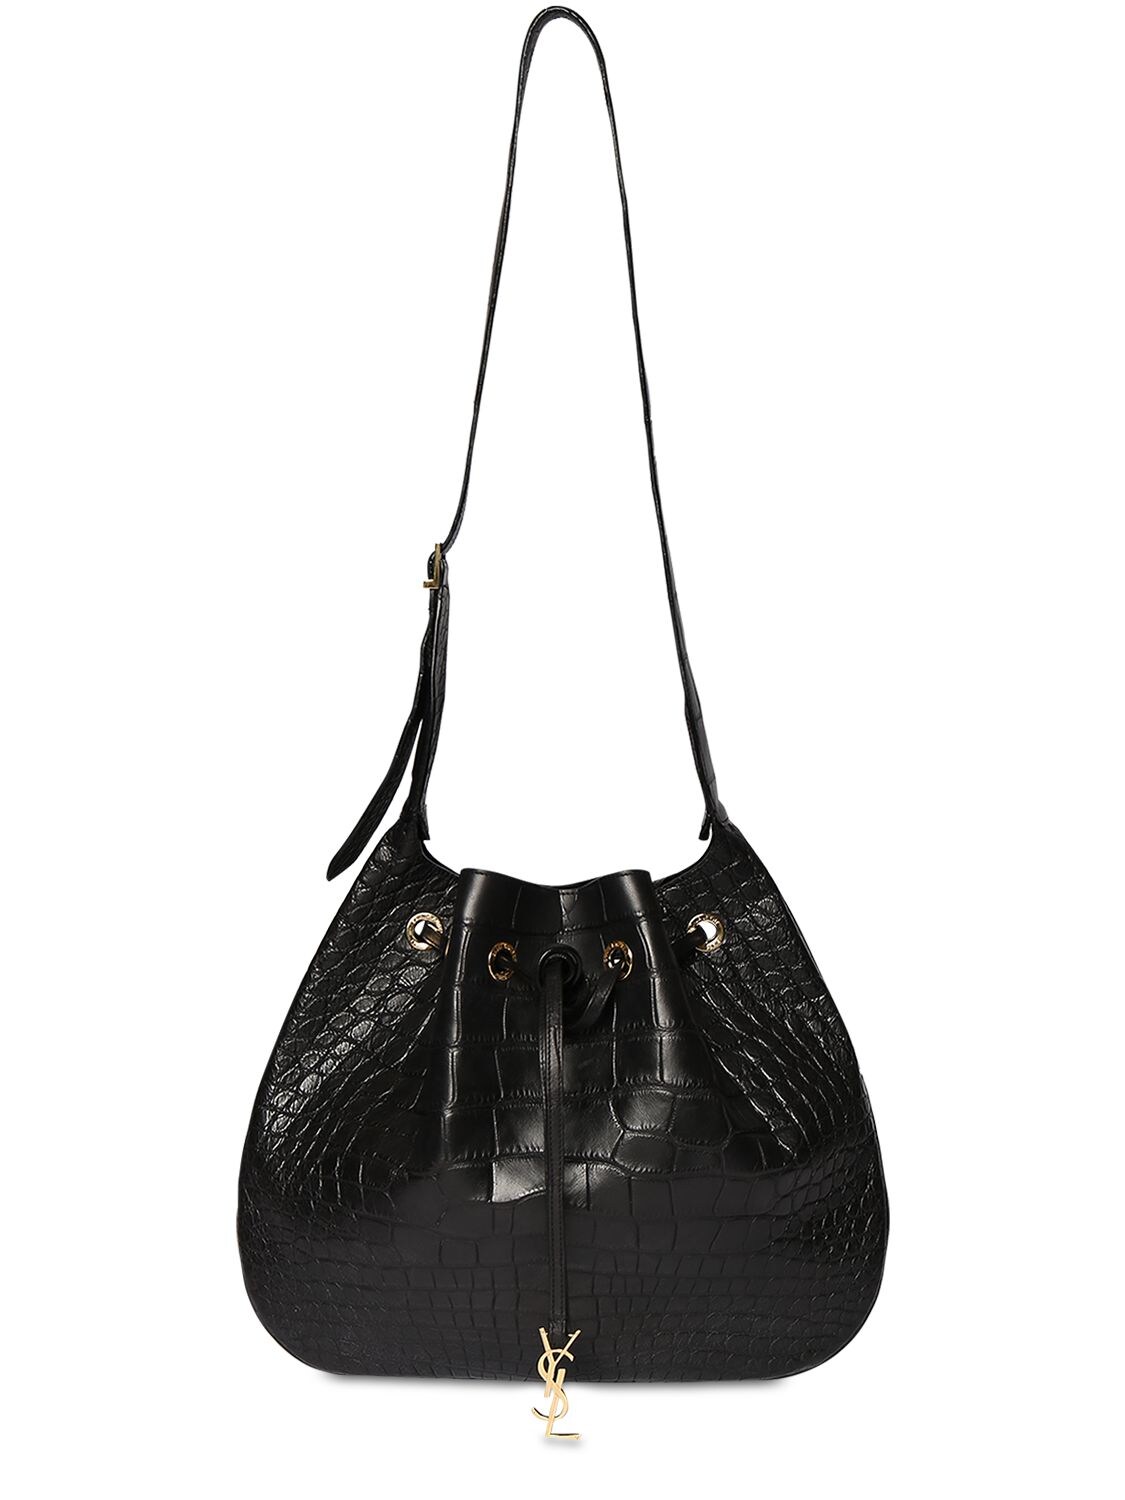 Image of Croc Embossed Leather Shoulder Bag